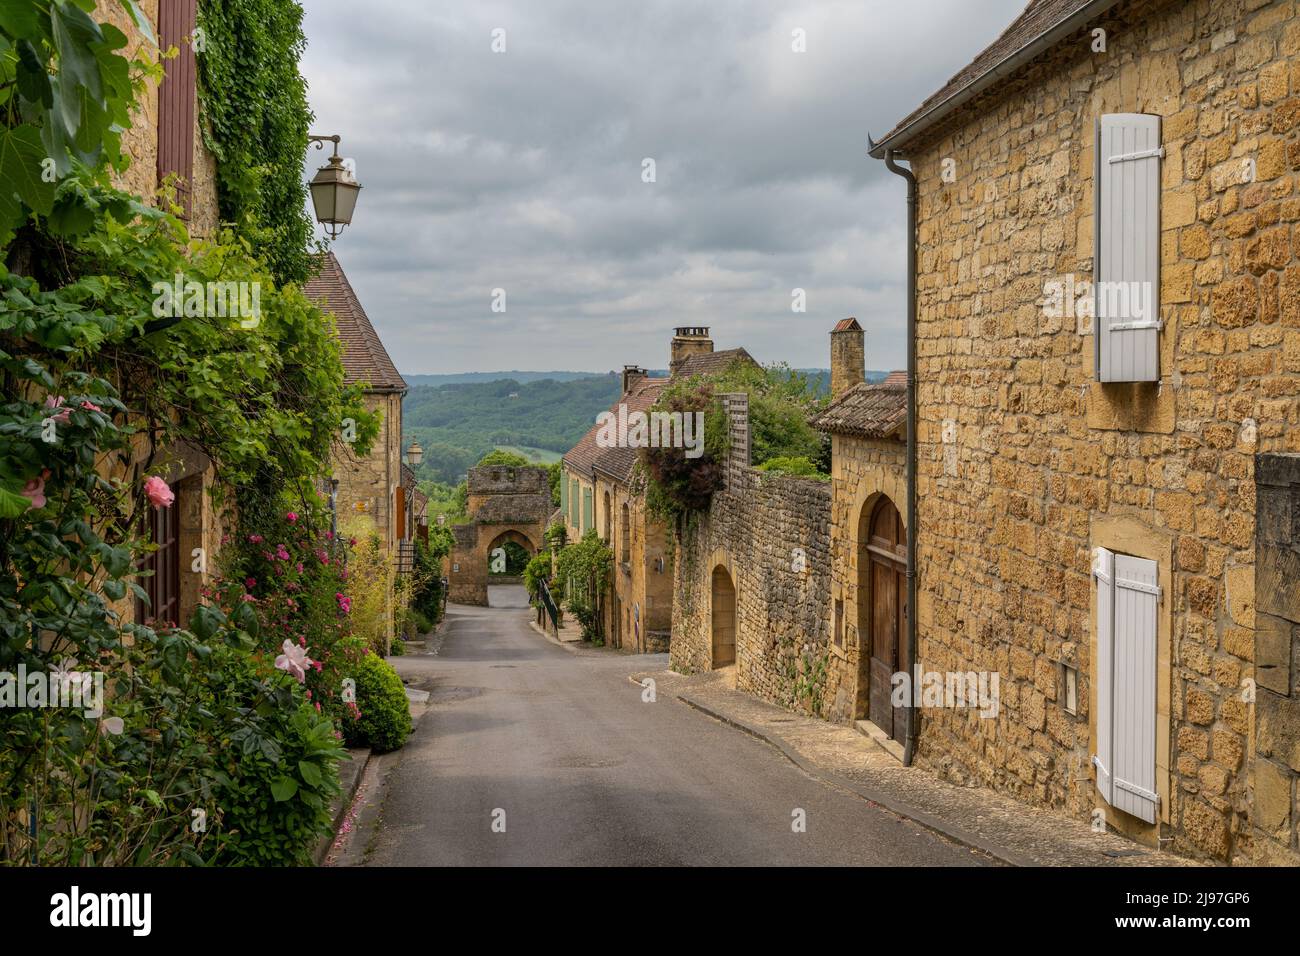 Domme, Francia - 12 maggio, 2022: Strada pittoresca con case in pietra e fiori in fiore nel villaggio storico di Domme nella valle della Dordogna Foto Stock